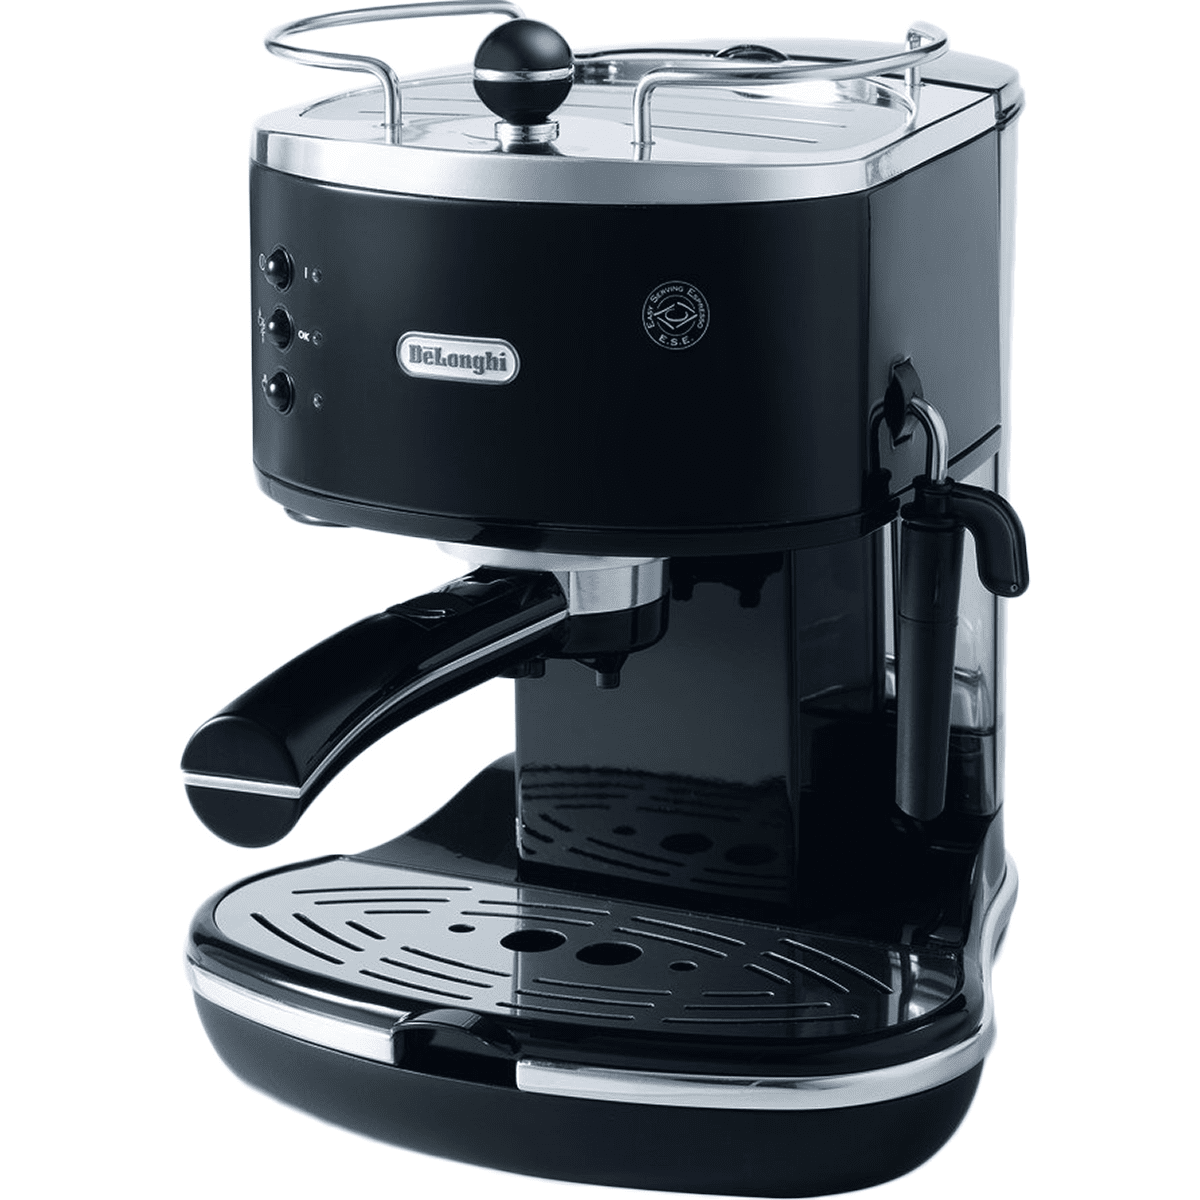 Delonghi Eco310 Icona Manual Espresso Machine (black) - Eco310bk